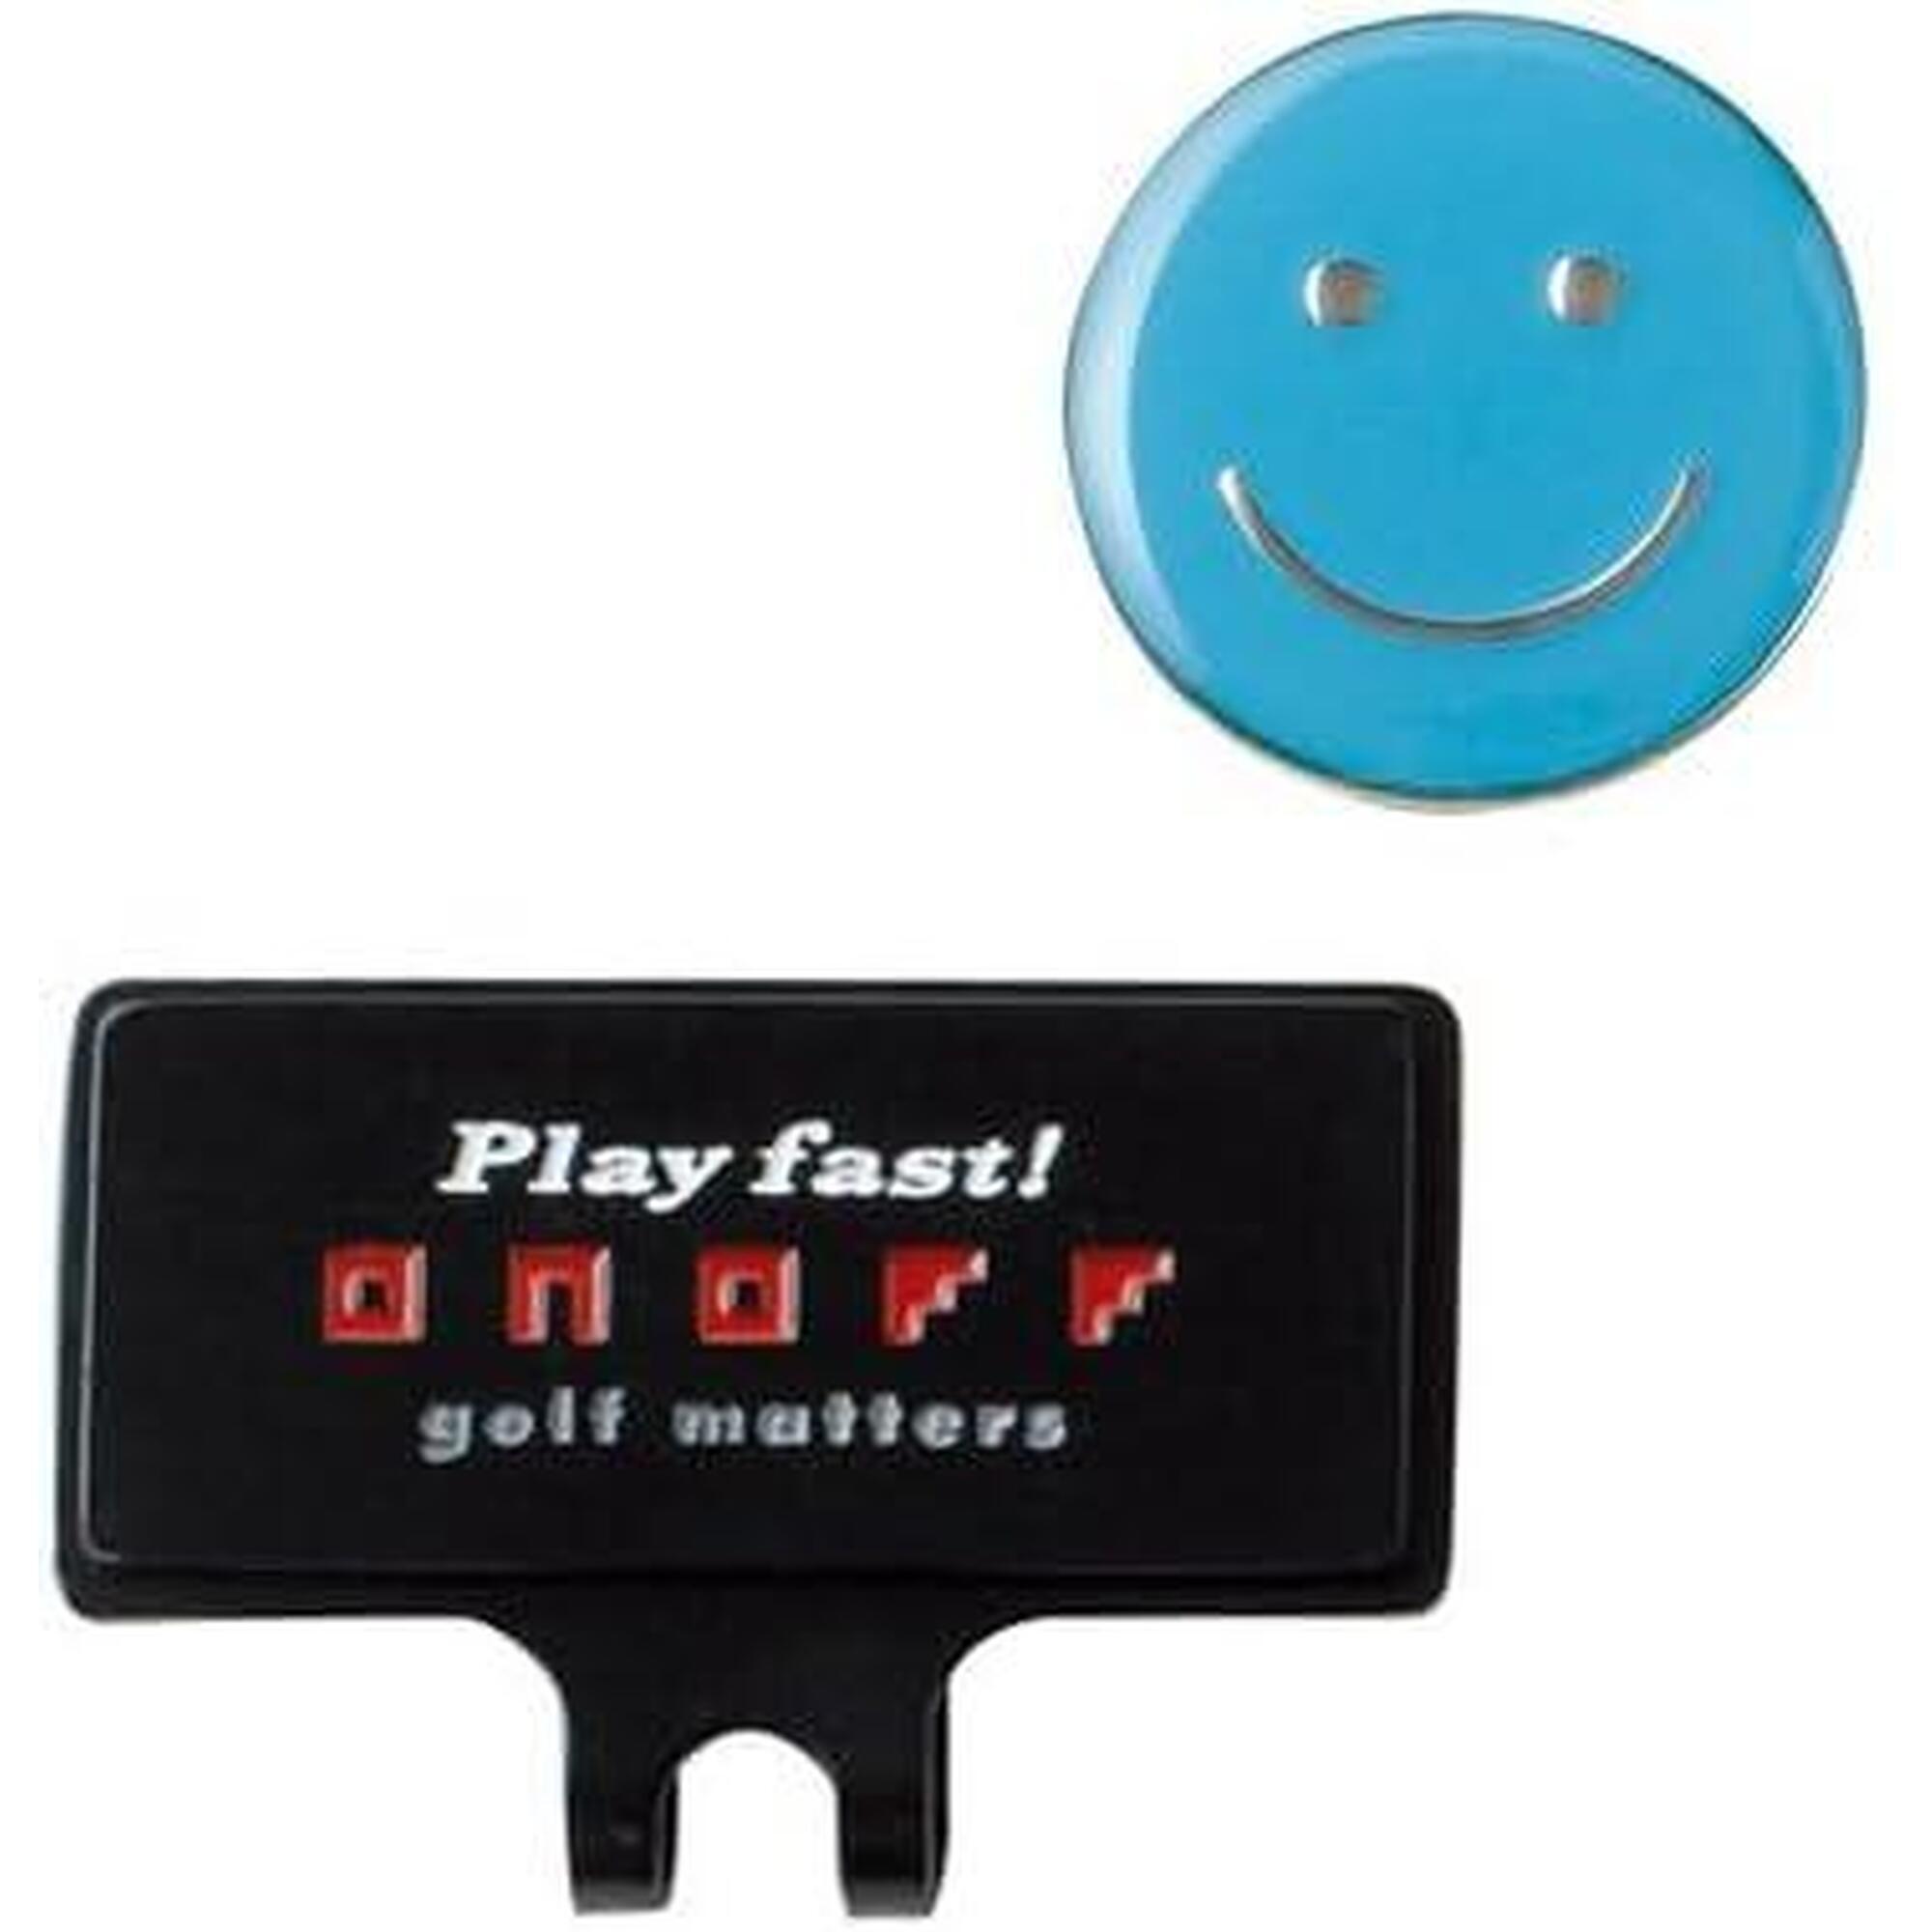 笑臉高爾夫球球標 - 藍色